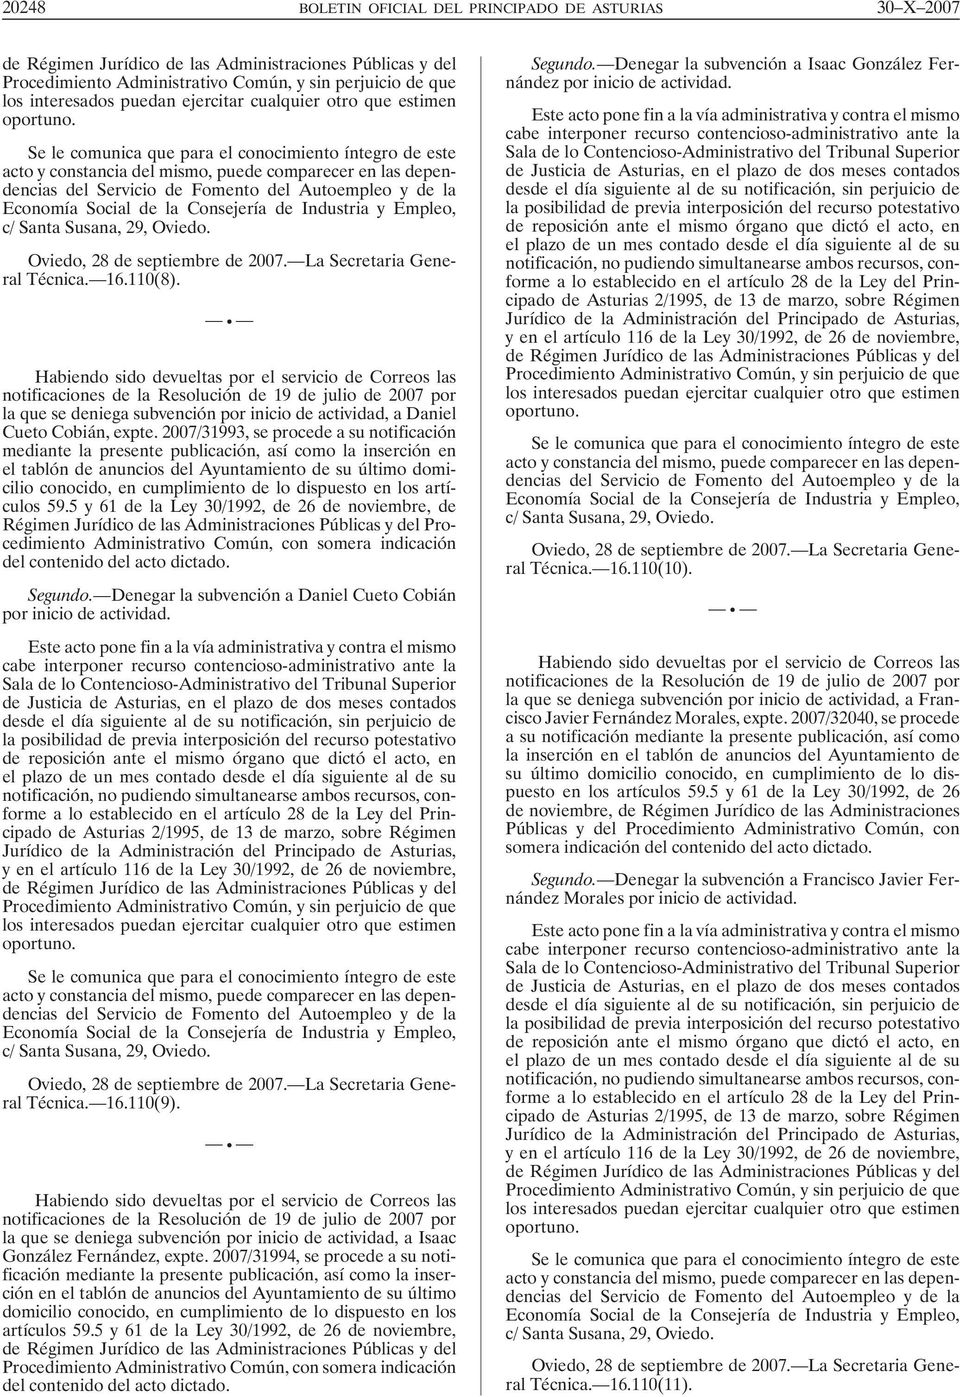 notificaciones de la Resolución de 19 de julio de 2007 por la que se deniega subvención por inicio de actividad, a Daniel Cueto Cobián, expte.